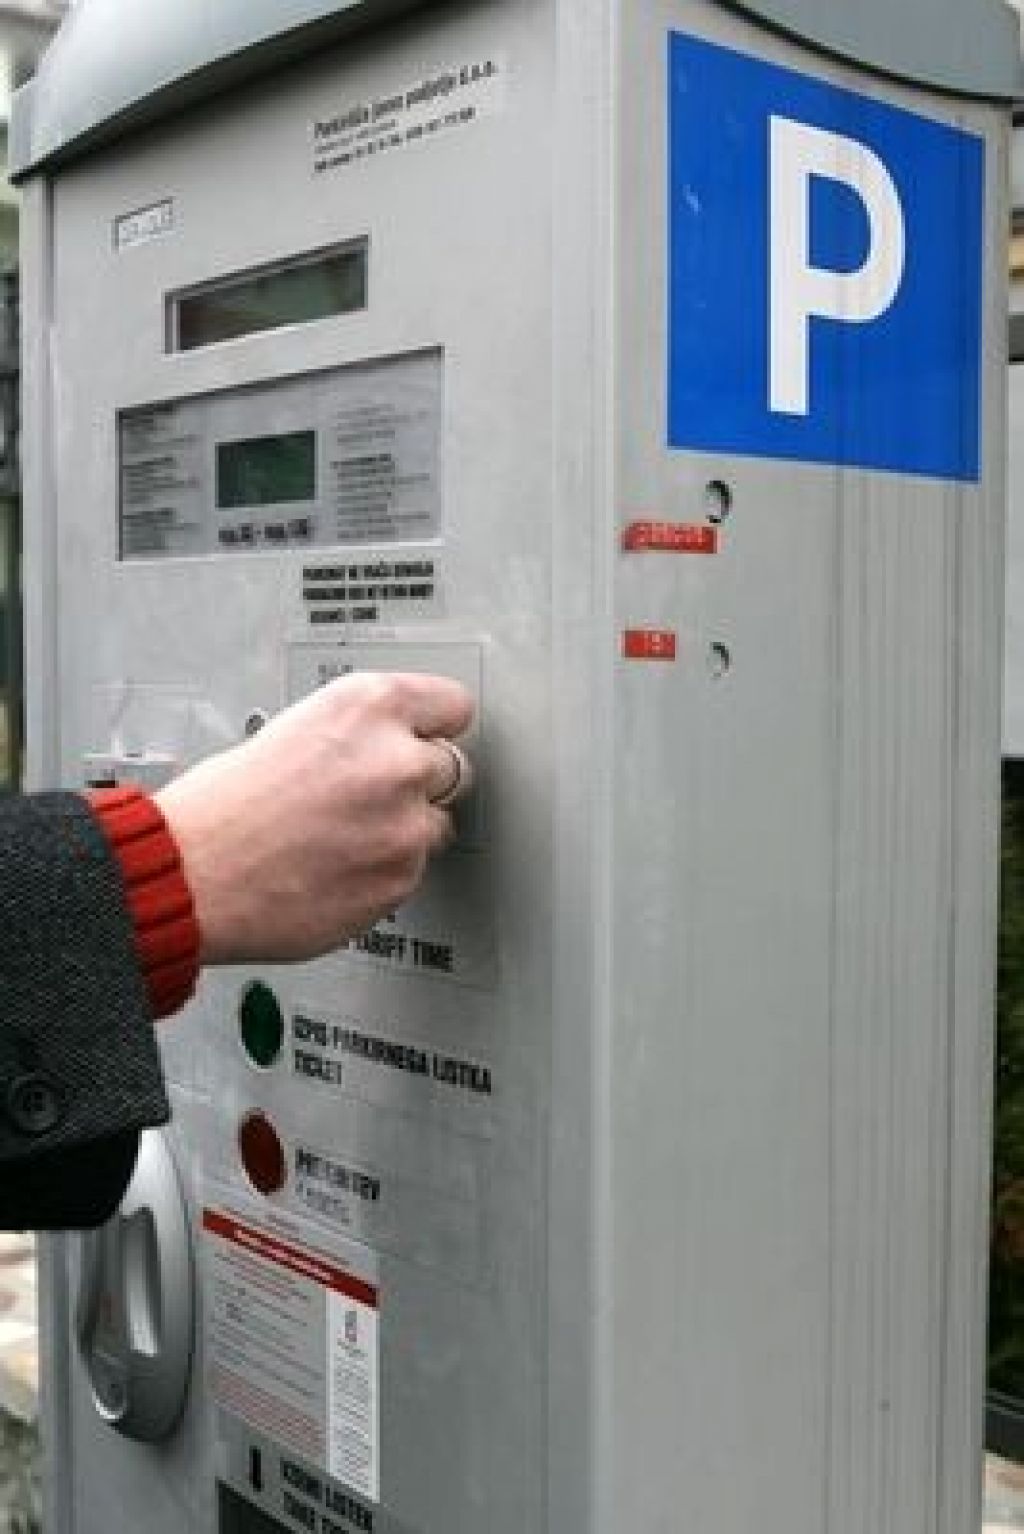 Ljubljanski parkomati sprejemajo kovance za en tolar